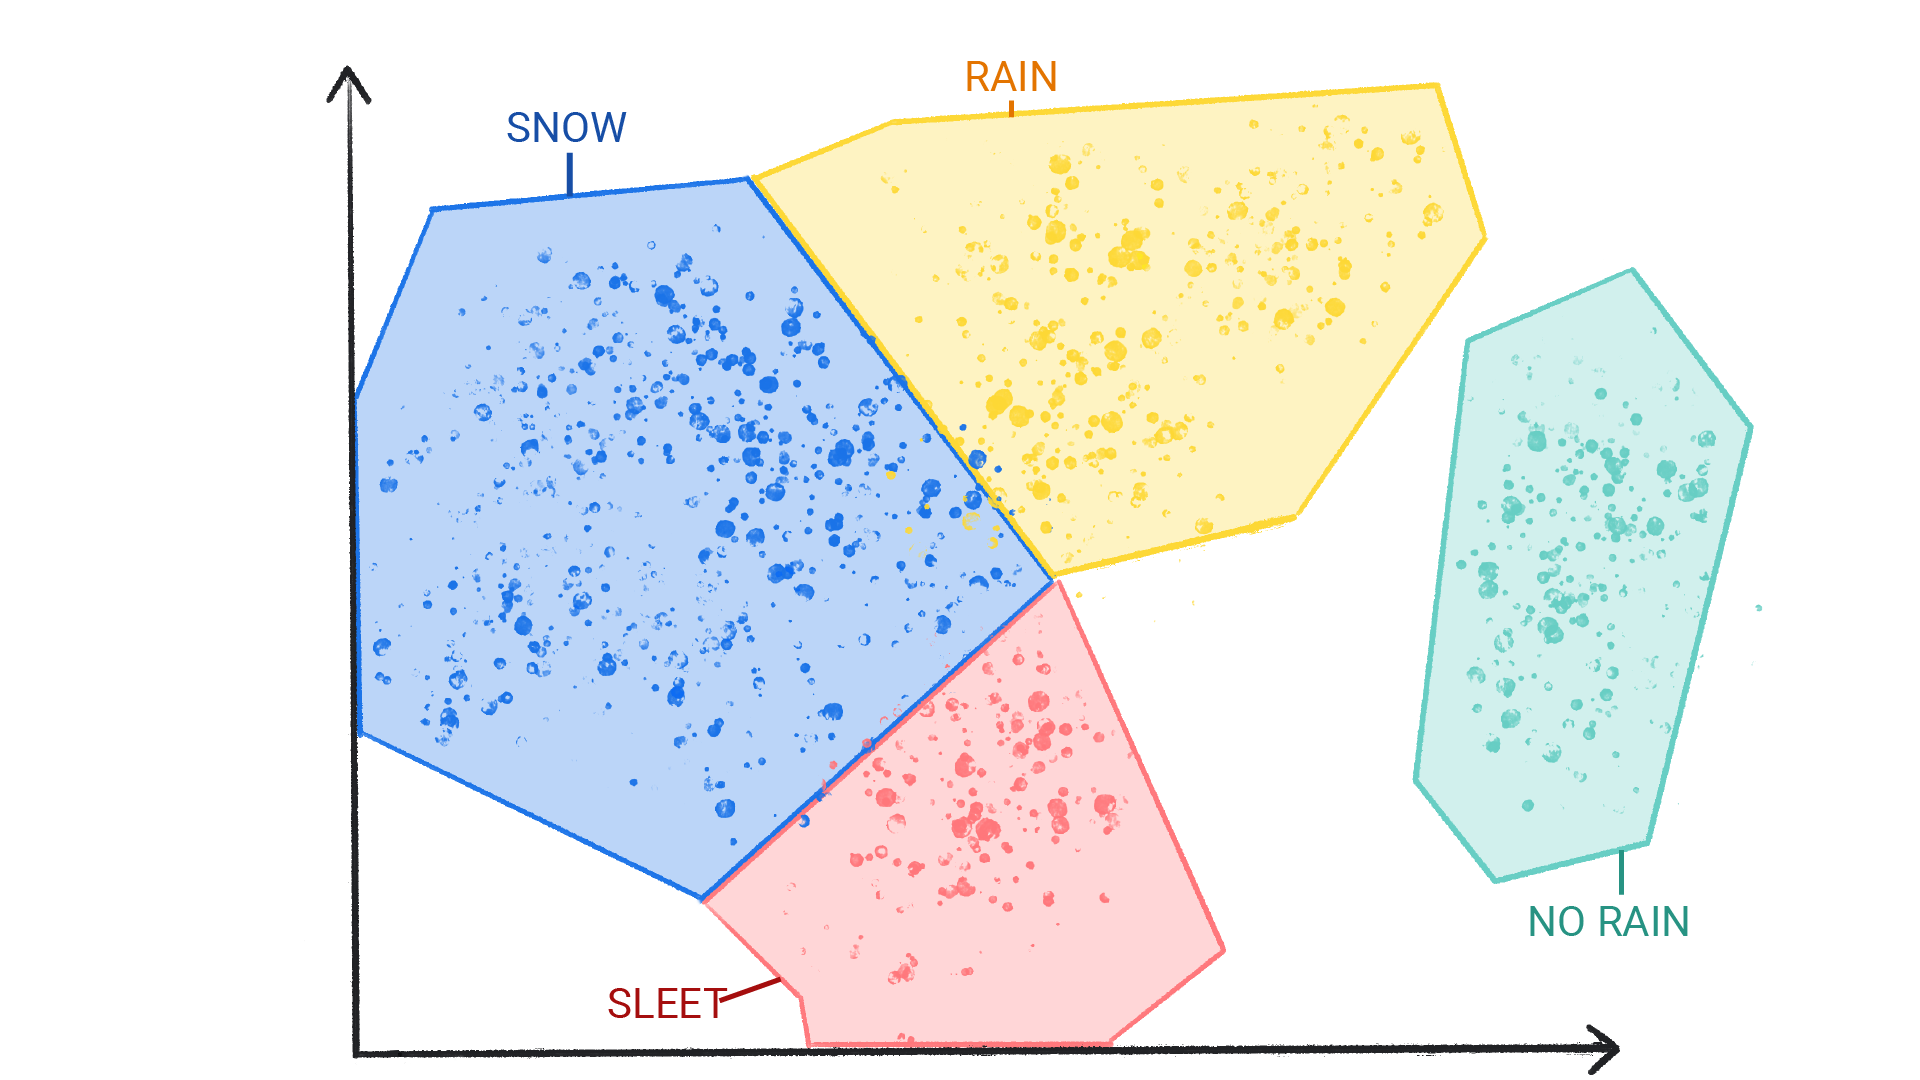 Hình ảnh hiển thị các chấm có màu sắc thành từng cụm được gắn nhãn là tuyết, mưa, mưa đá và không có mưa được bao bọc theo hình và có đường viền với nhau.